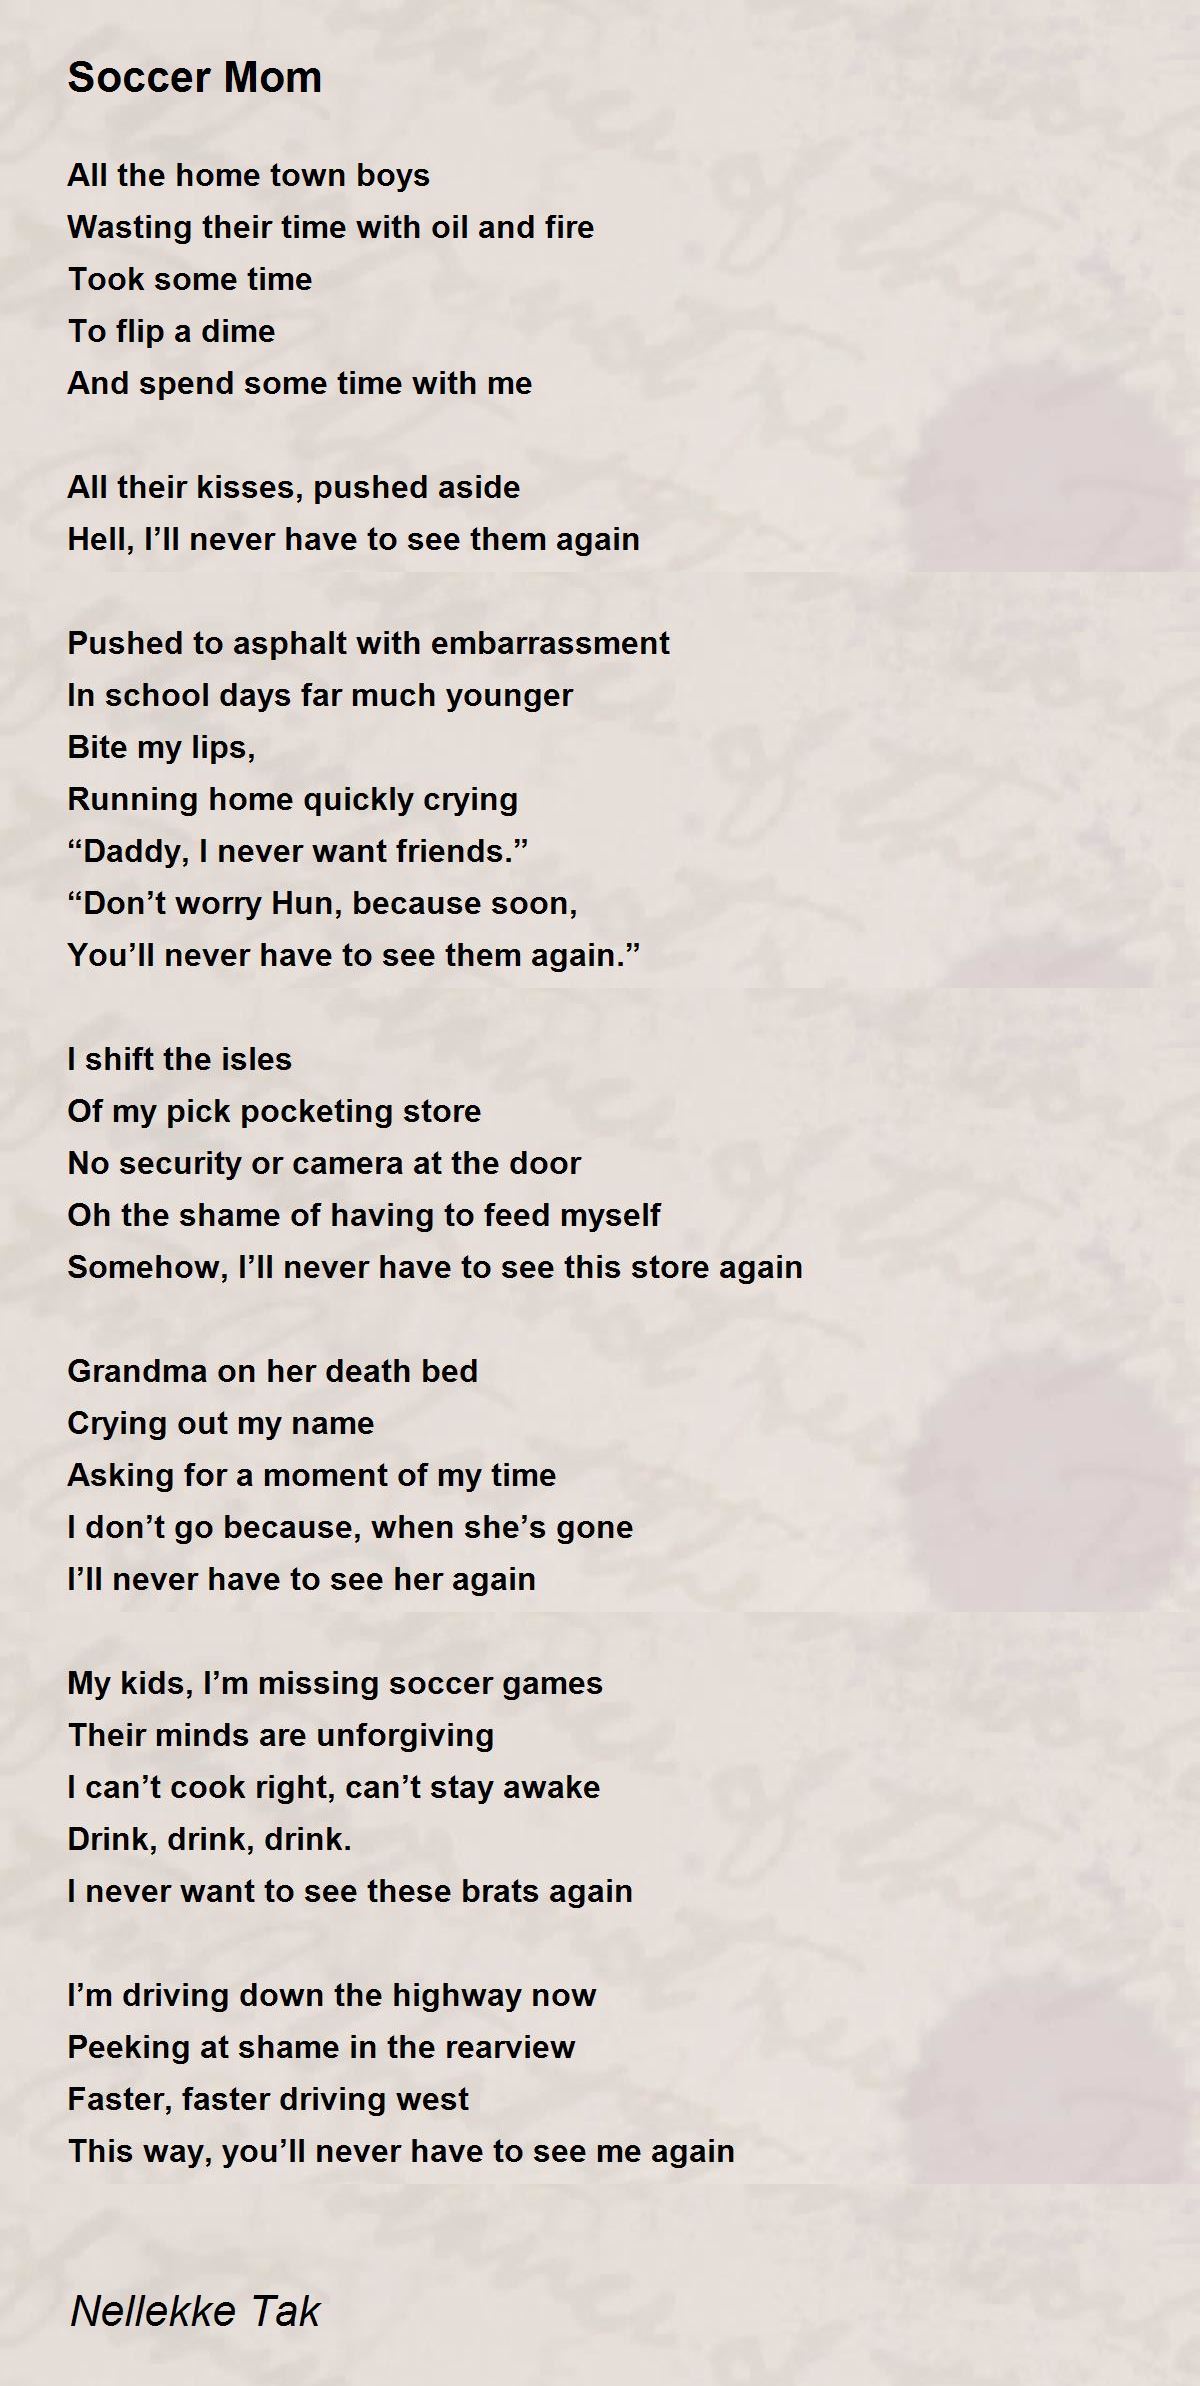 Soccer Mom - Soccer Mom Poem by Nellekke Tak